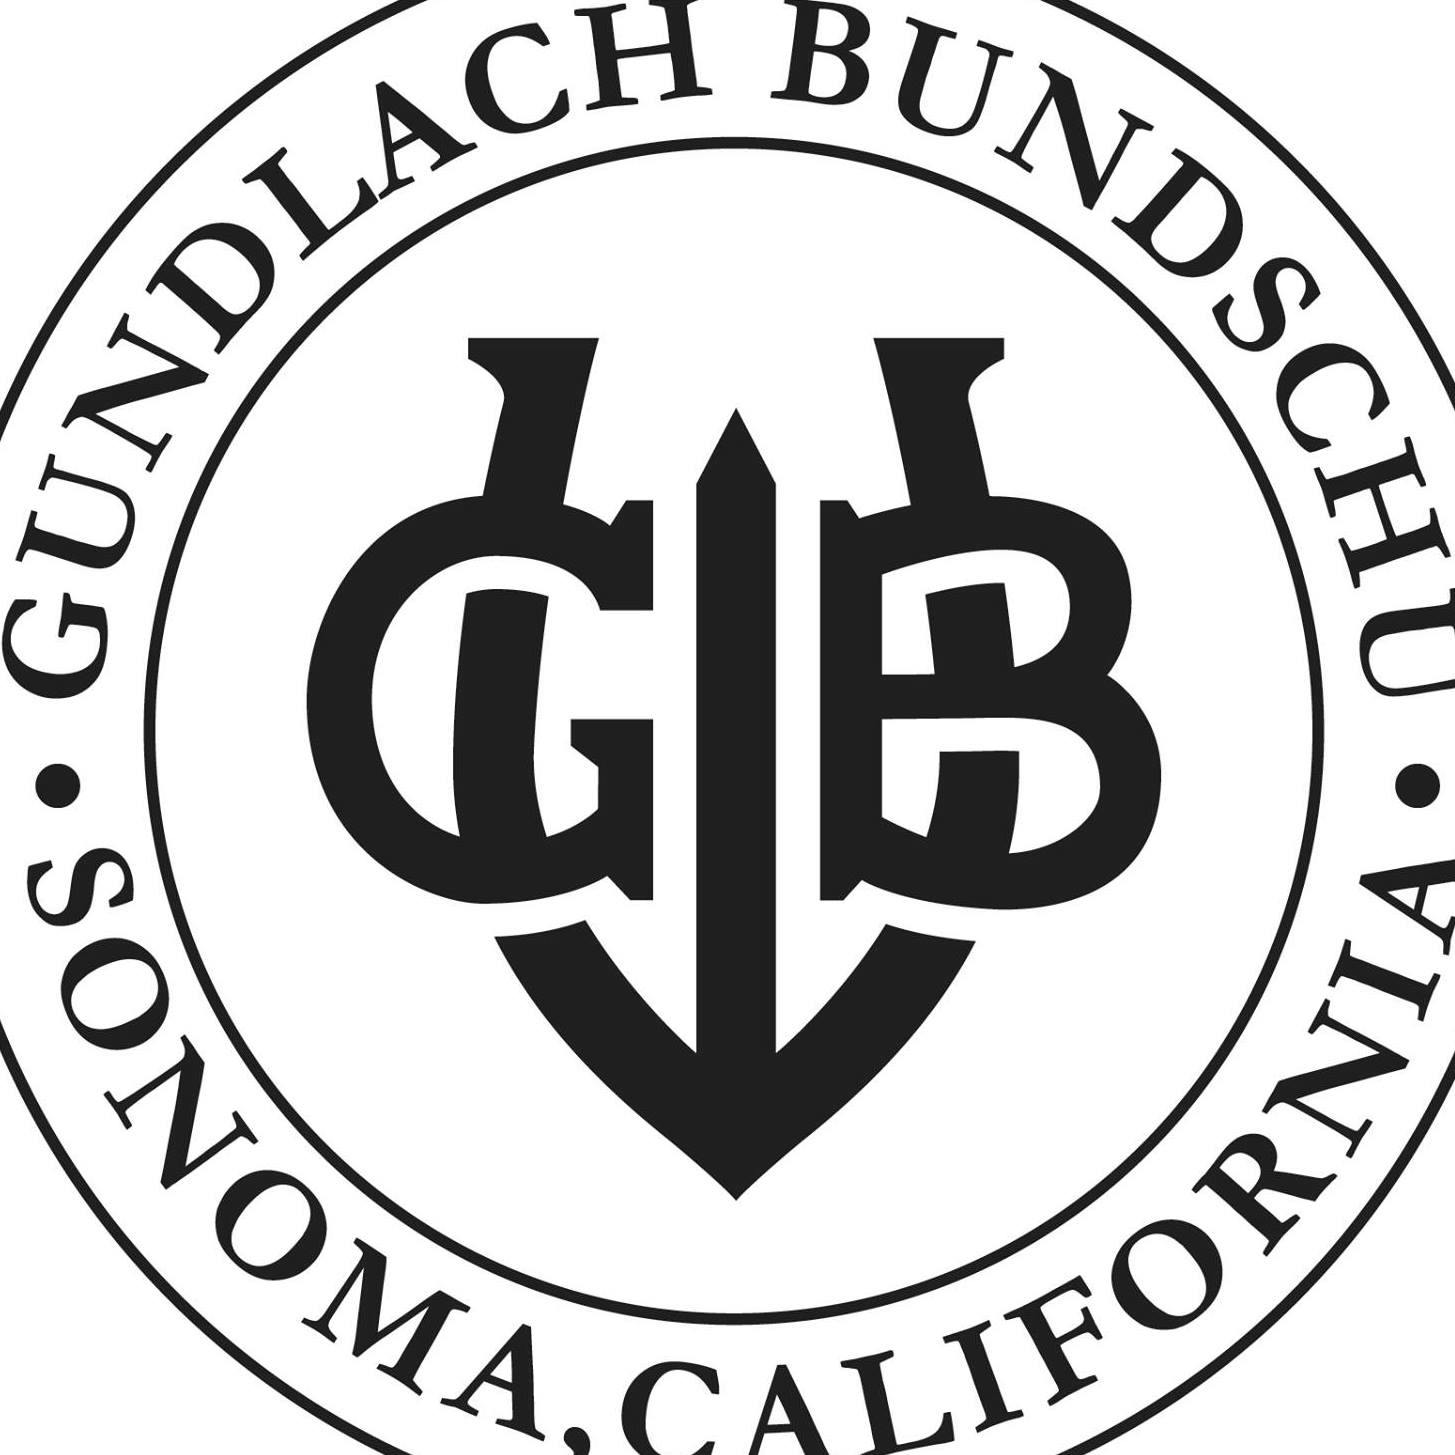 Gundlach Bundschu Winery